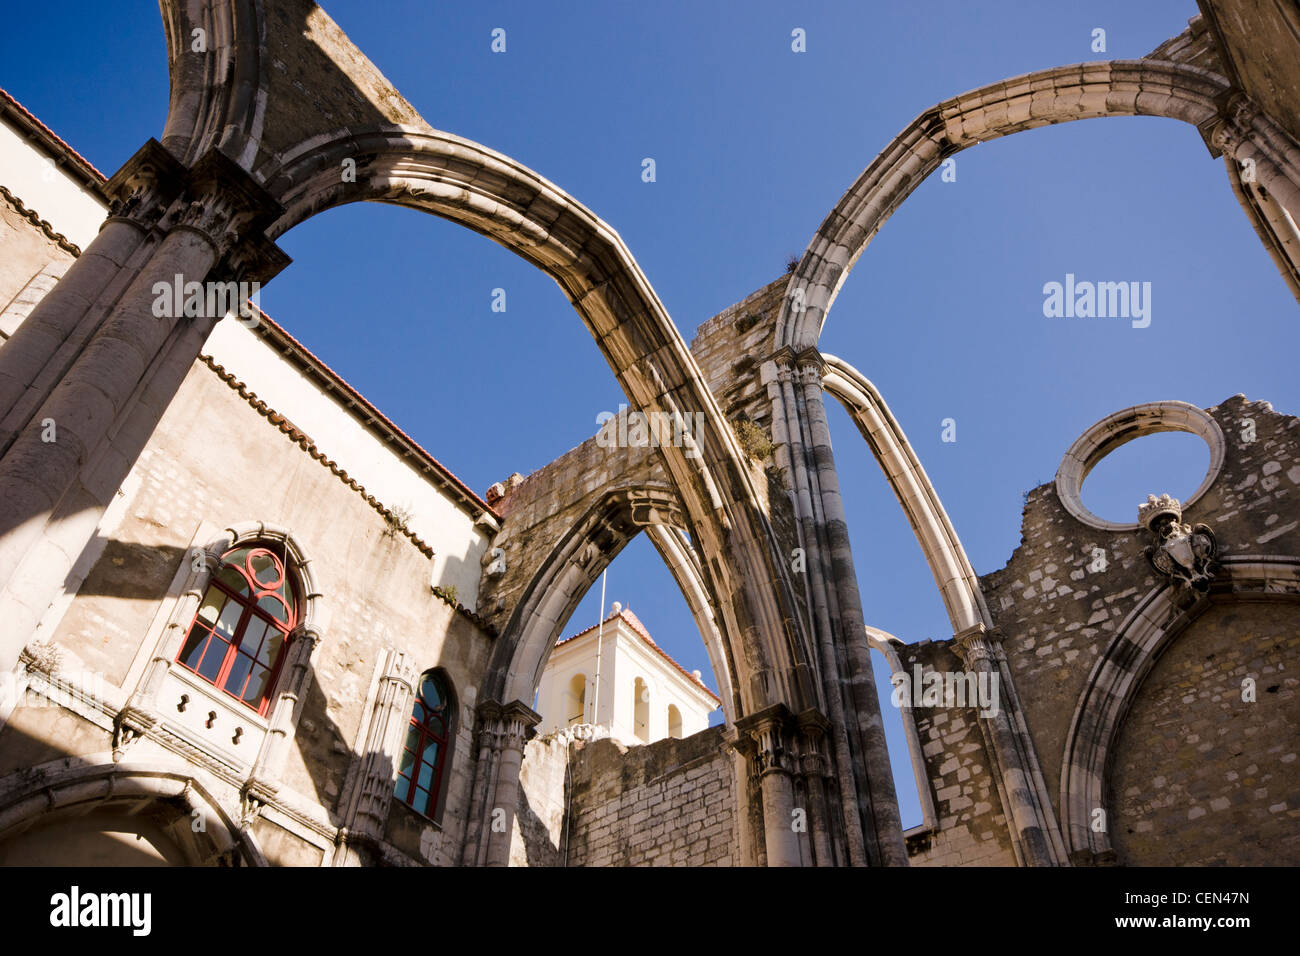 Convento do Carmo, einem mittelalterlichen Kloster, in dem Erdbeben von 1755 zerstört. Lissabon, Portugal. Stockfoto